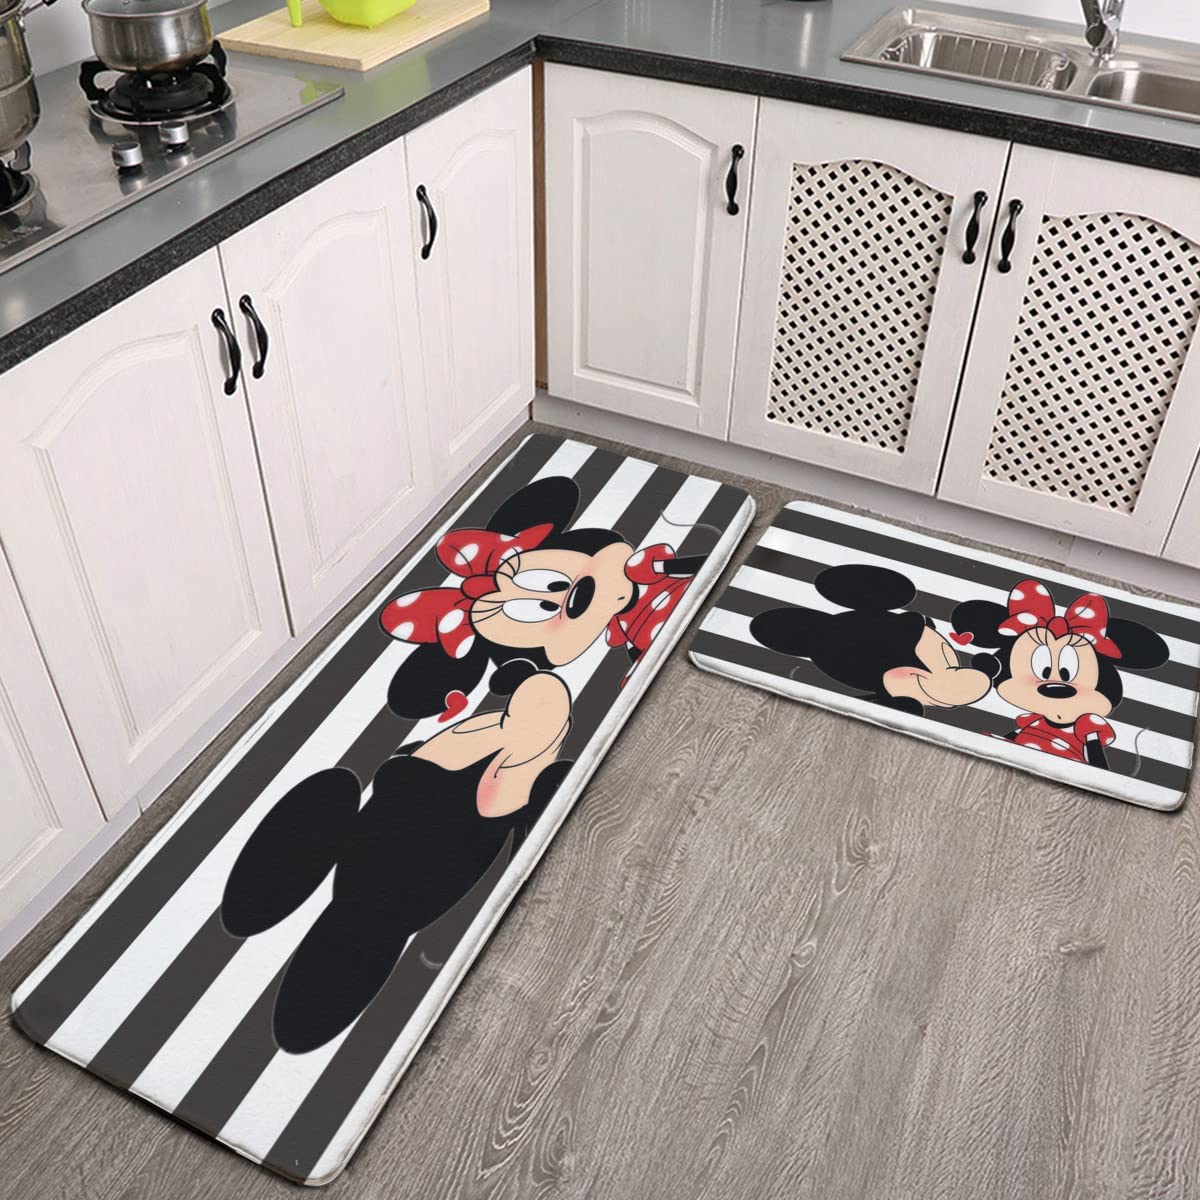 Disney at Home on Instagram  Disney kitchen decor, Disney kitchen, Mickey  kitchen